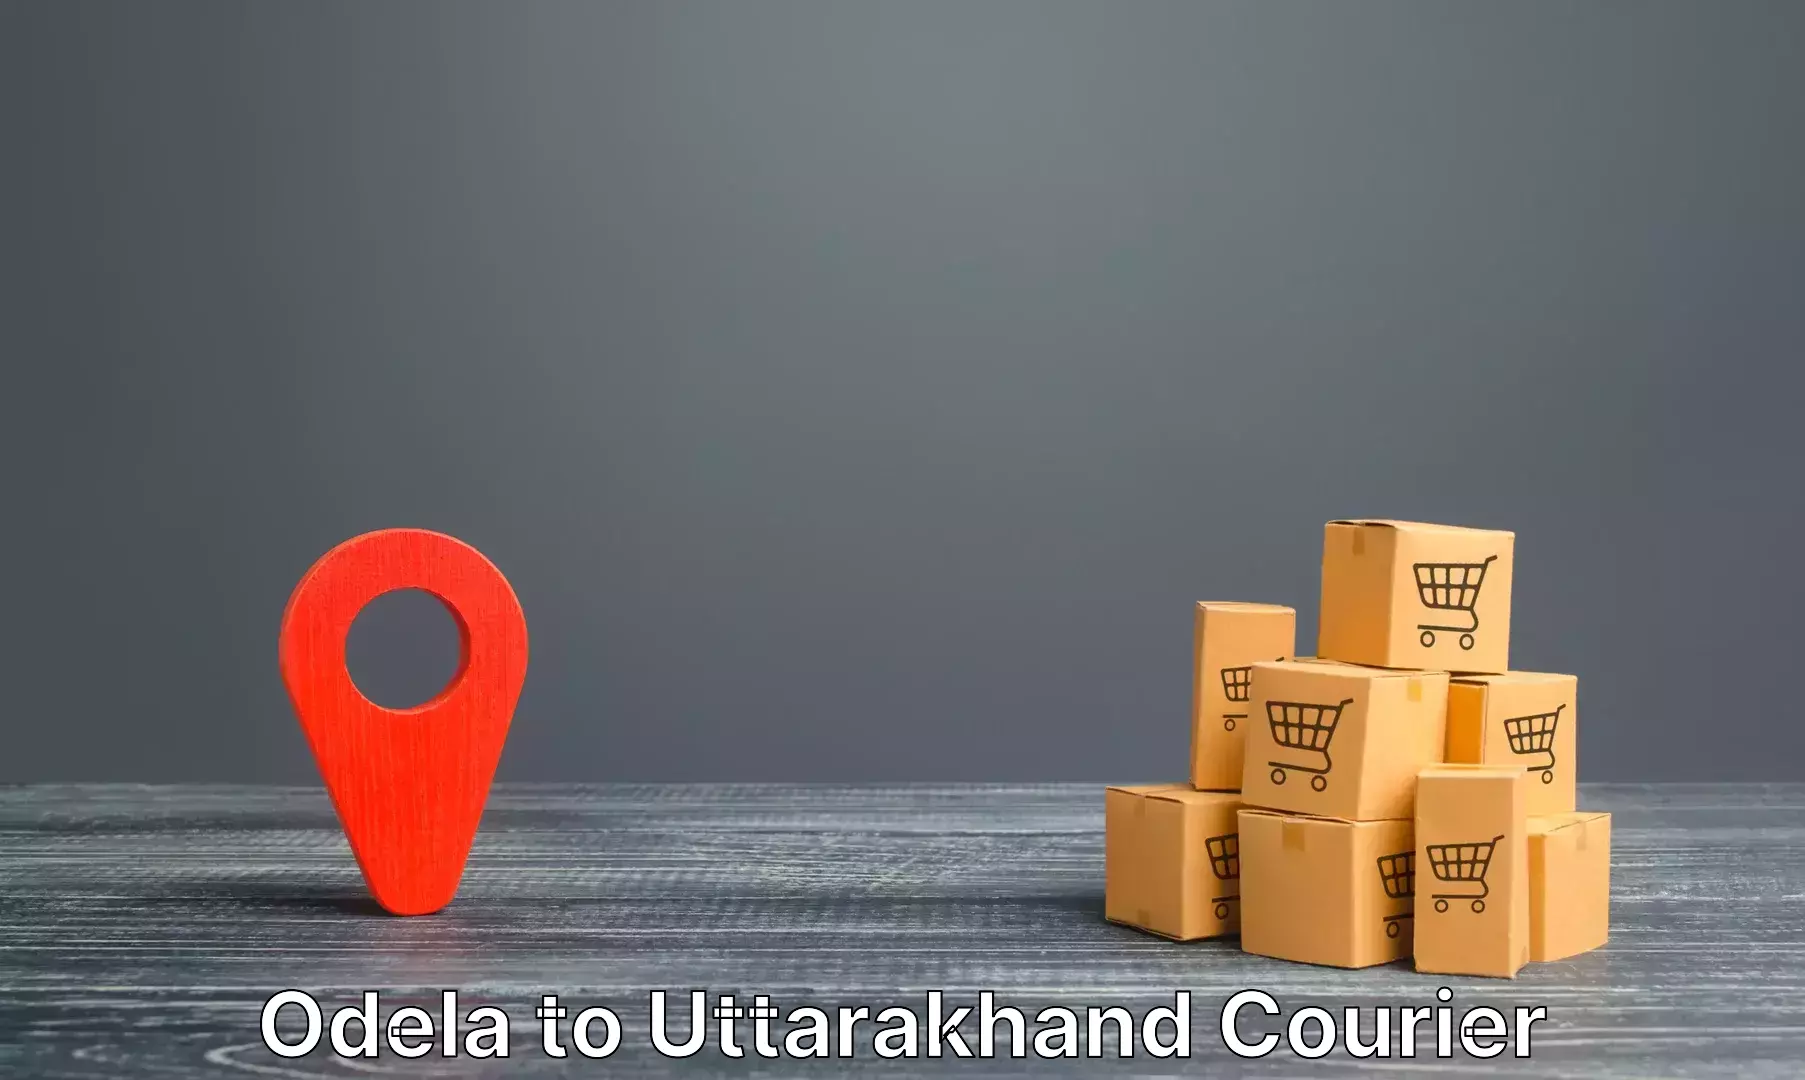 Baggage transport network Odela to Uttarakhand